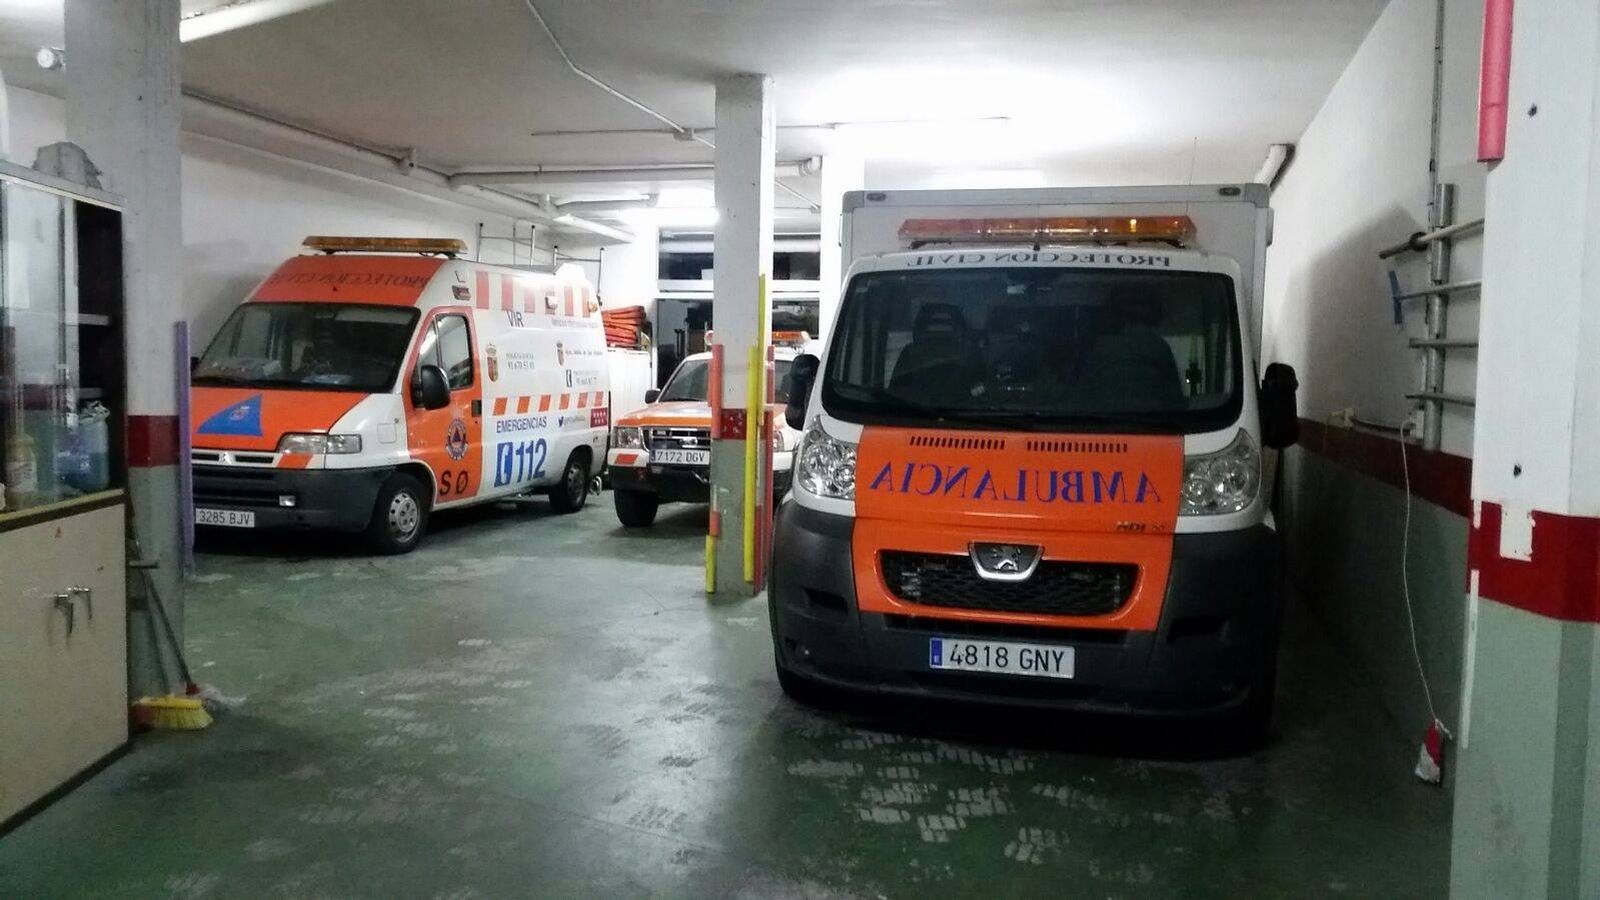 Foto: Base de la Asociación de Protección Civil de Velilla de San Antonio (Madrid), con la ambulancia inoperativa desde hace un mes. (A.G.)